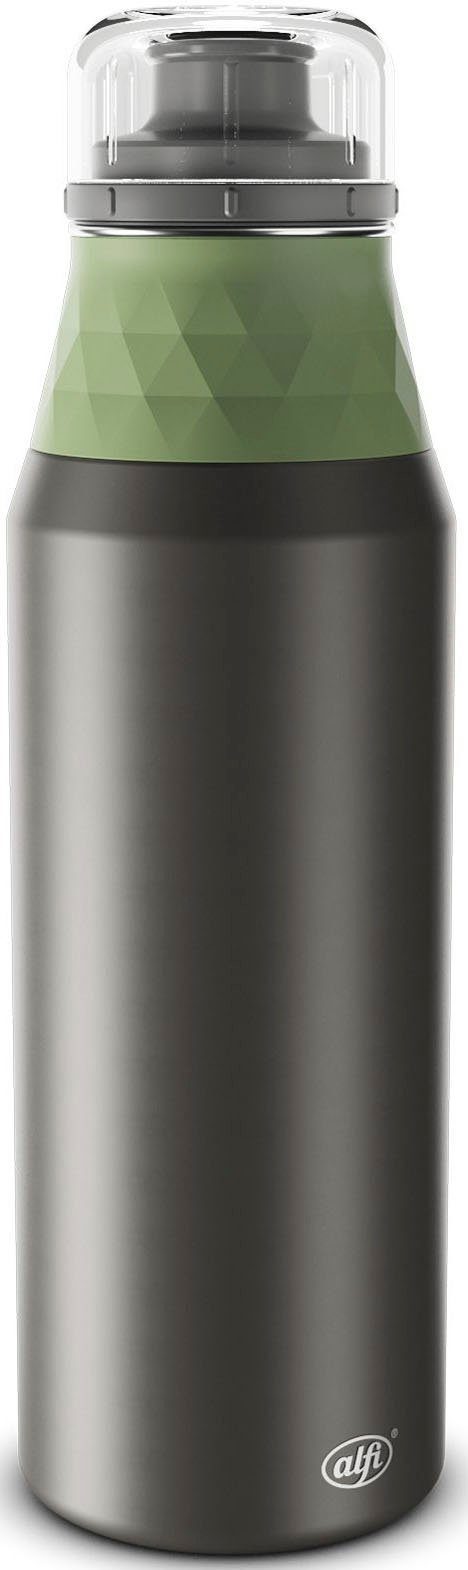 Alfi Isolierflasche ENDLESS BOTTLE, Edelstahl, 900 ml, mit AromaSafe® für puren Genuss celadon green mat | Trinkflaschen